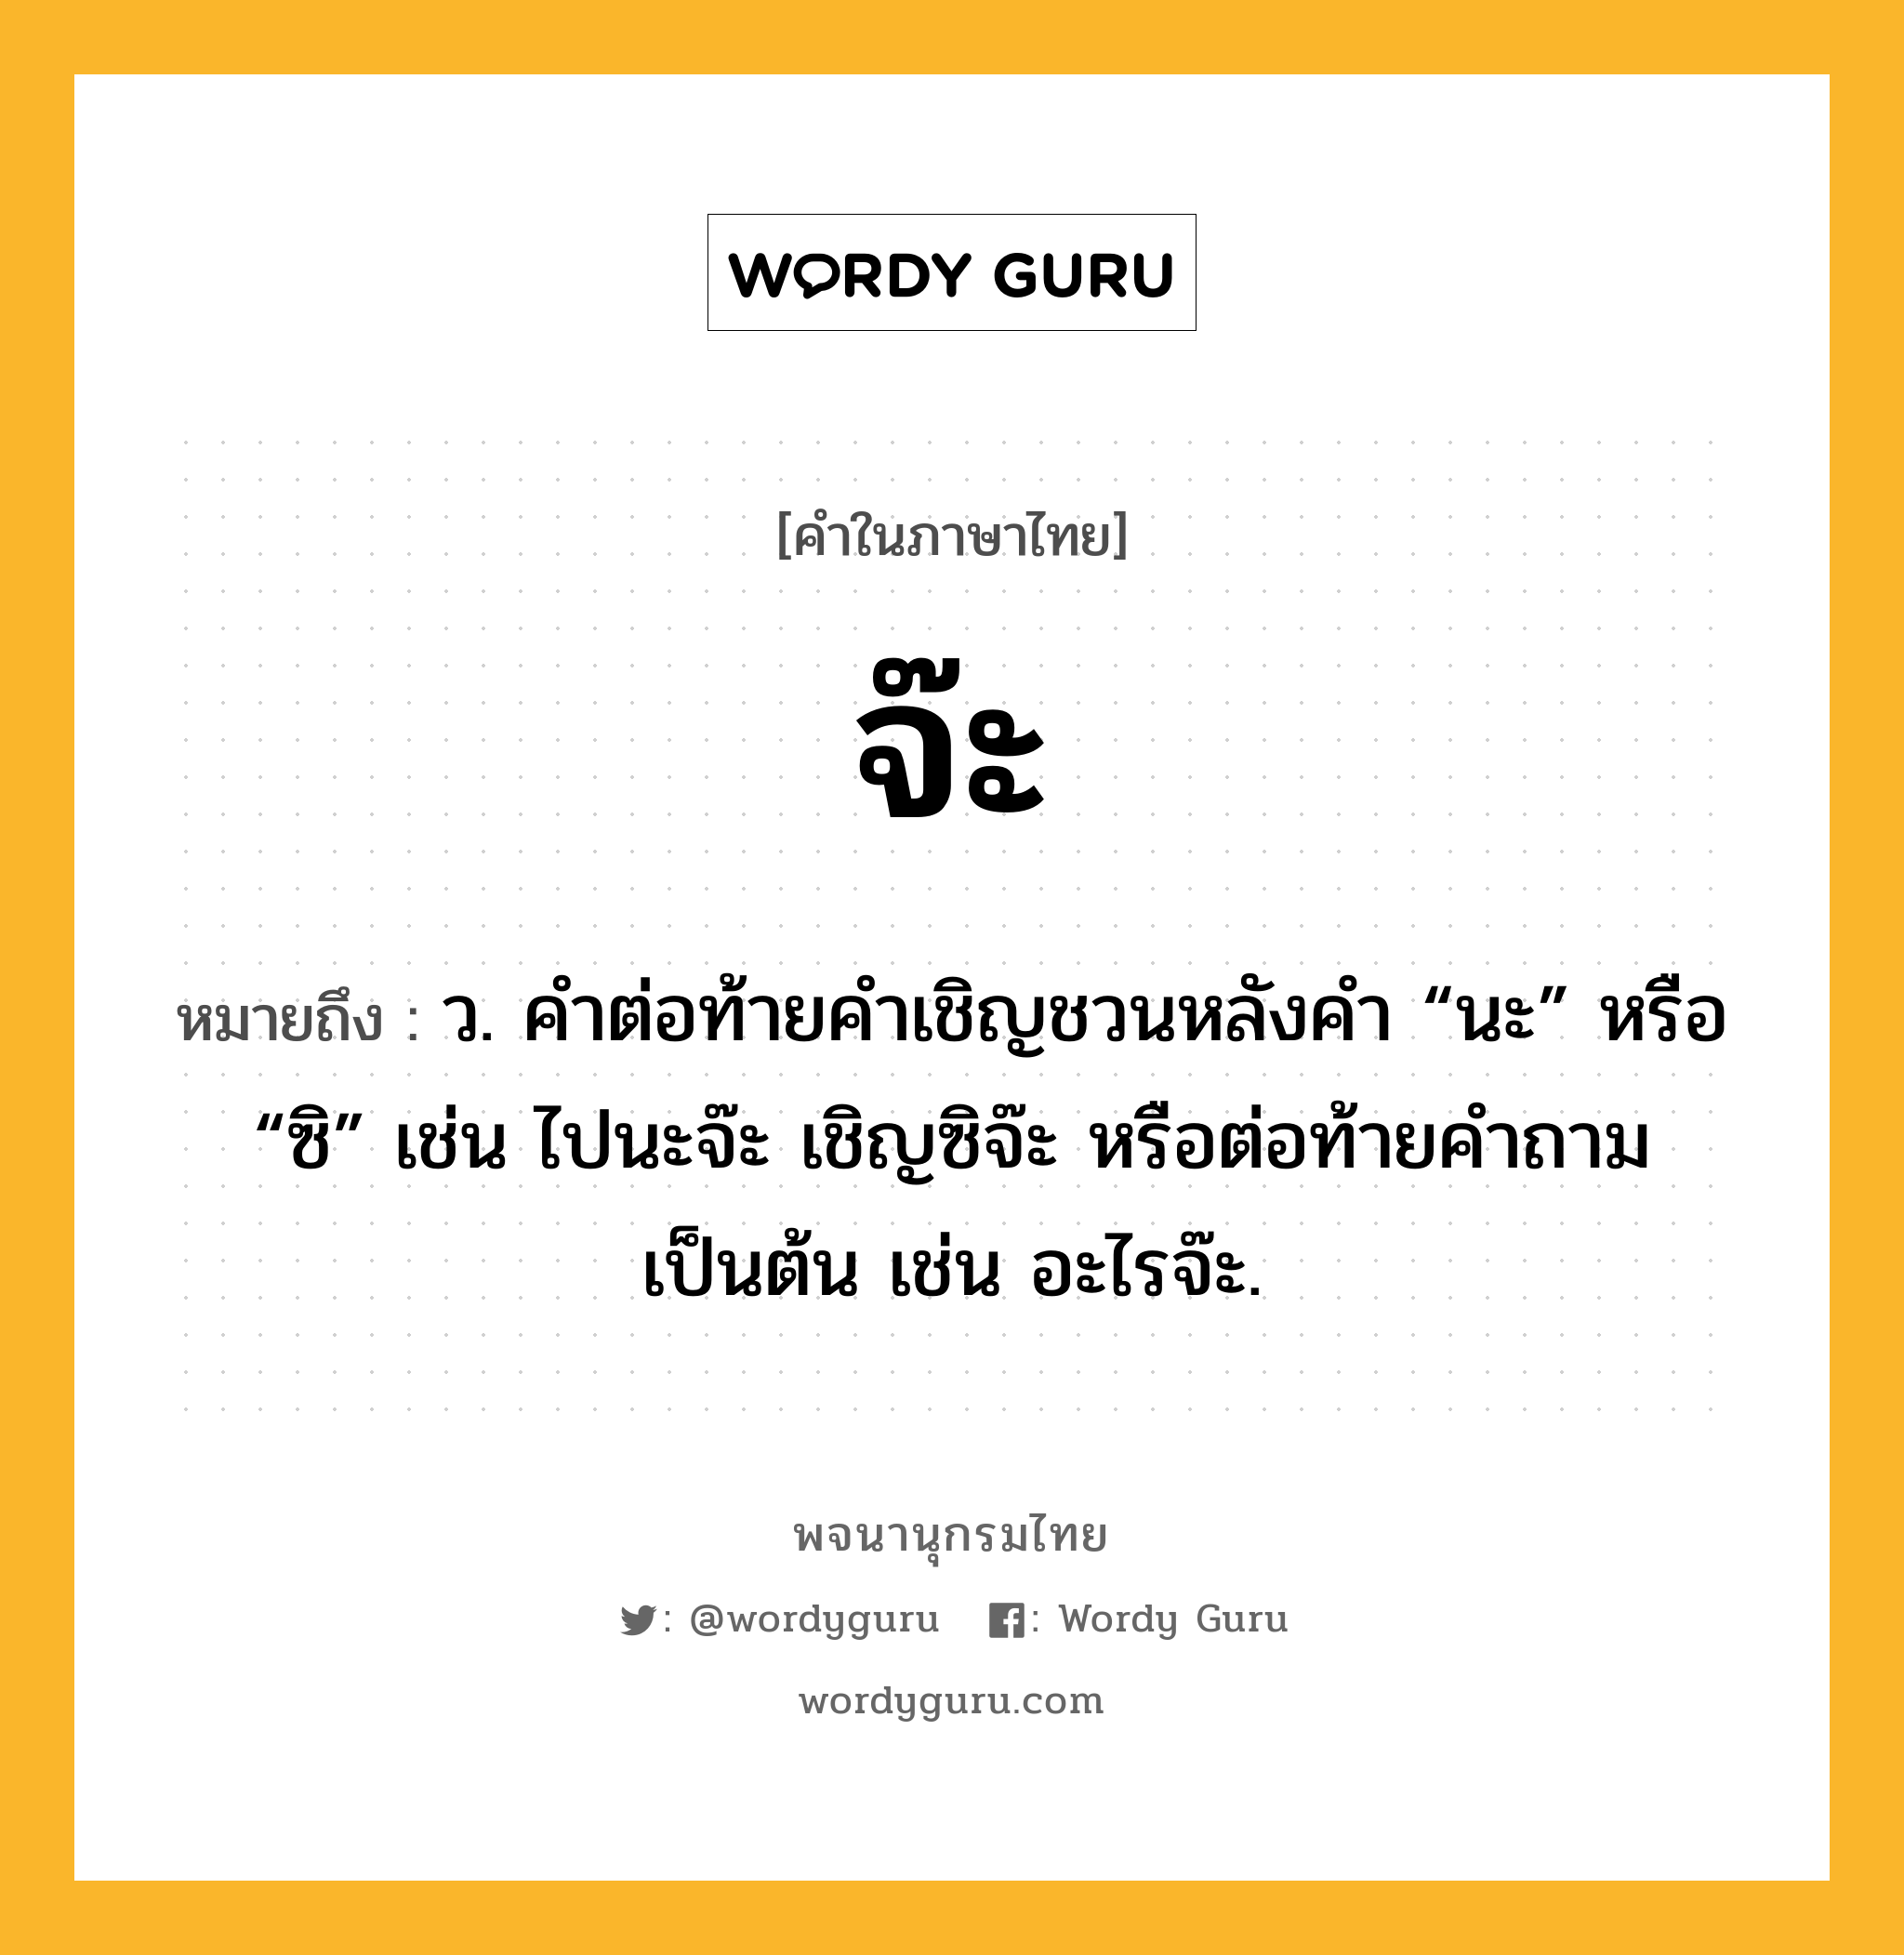 จ๊ะ ความหมาย หมายถึงอะไร?, คำในภาษาไทย จ๊ะ หมายถึง ว. คําต่อท้ายคําเชิญชวนหลังคำ “นะ” หรือ “ซิ” เช่น ไปนะจ๊ะ เชิญซิจ๊ะ หรือต่อท้ายคำถามเป็นต้น เช่น อะไรจ๊ะ.